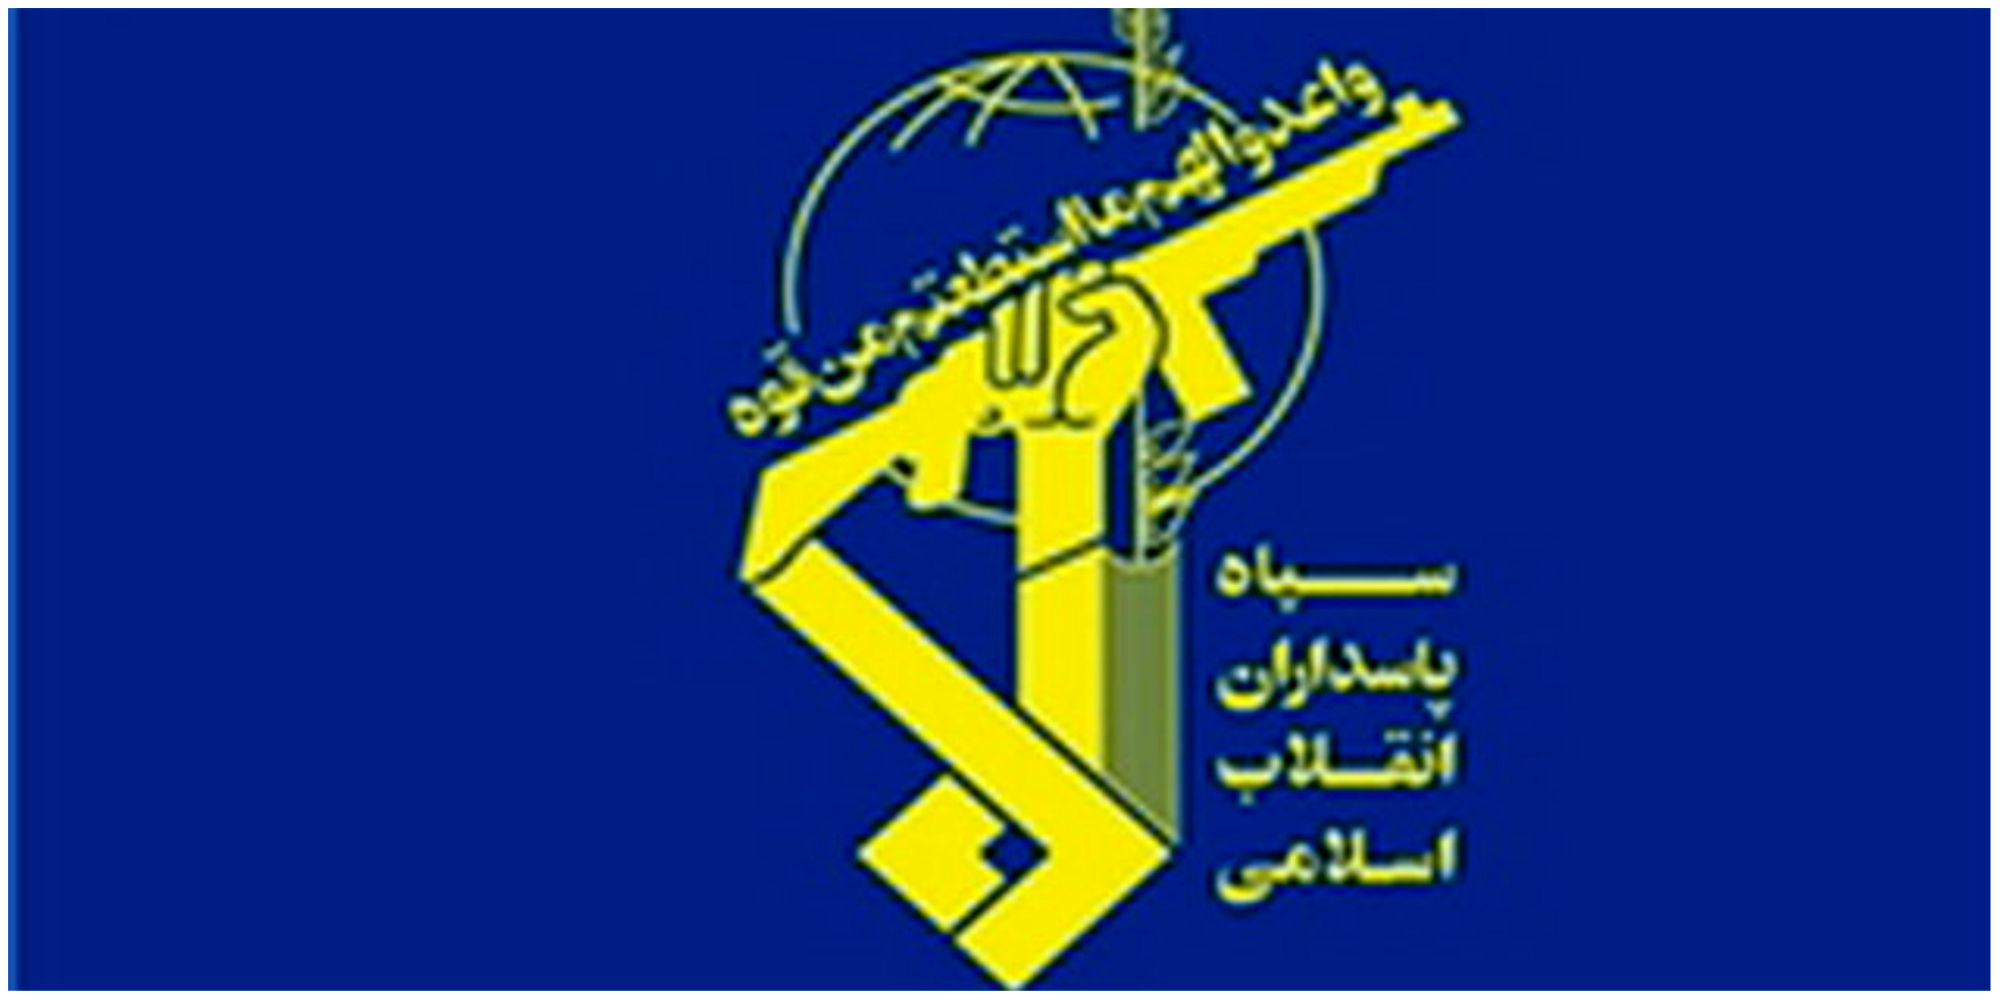 سازمان اطلاعات سپاه یک پیام مهم صادر کرد